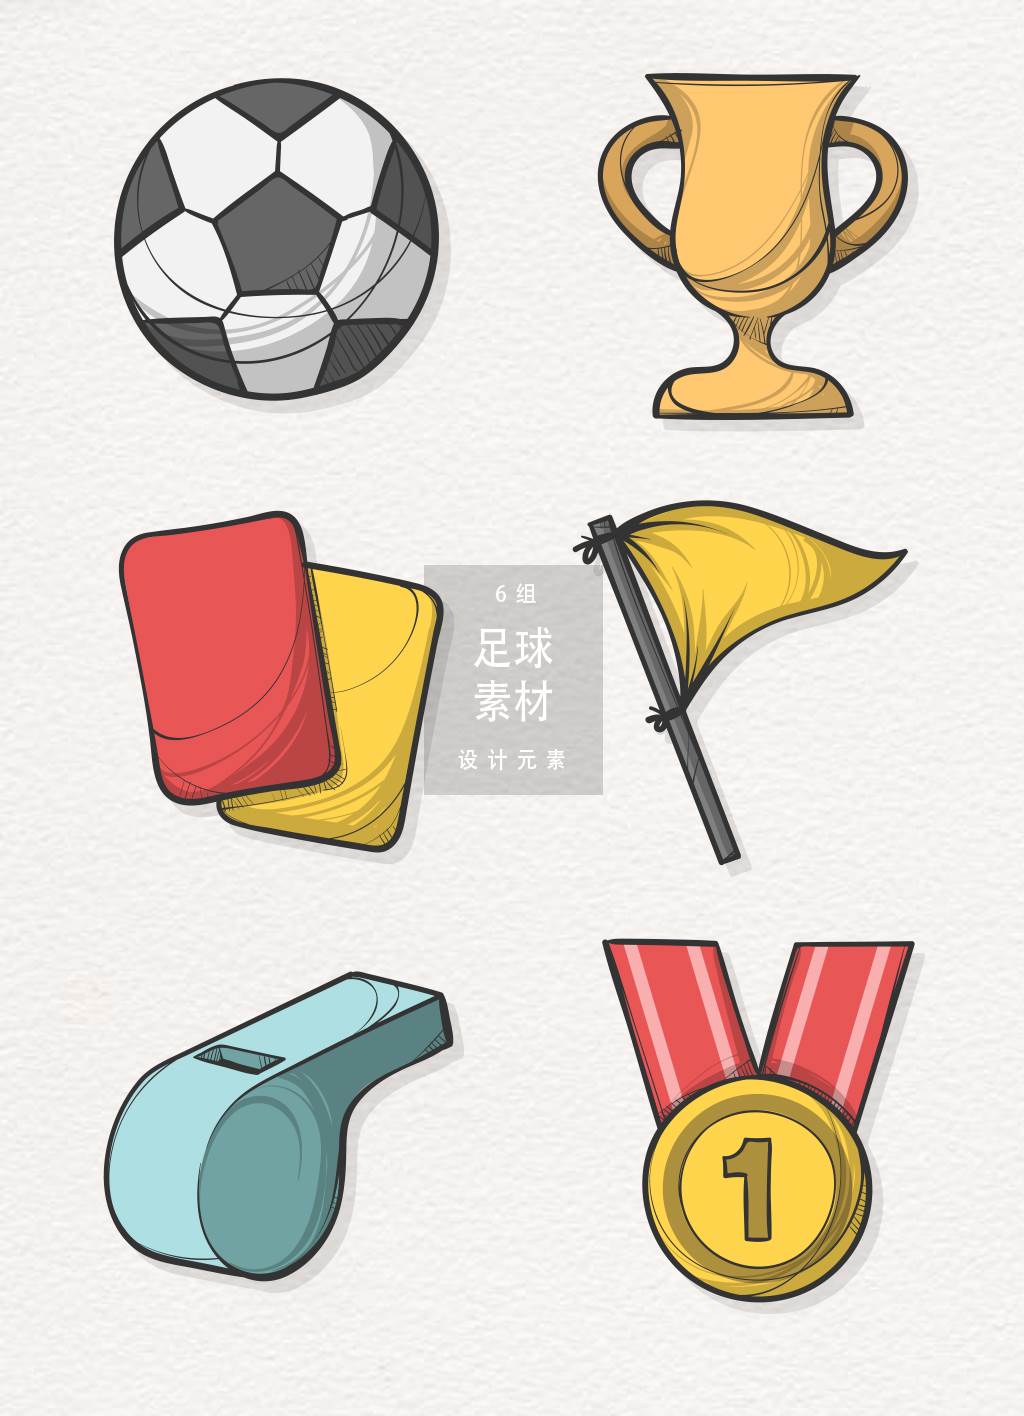 世界杯足球网简笔画素材 世界杯足球网简笔画素材图 - 水彩迷